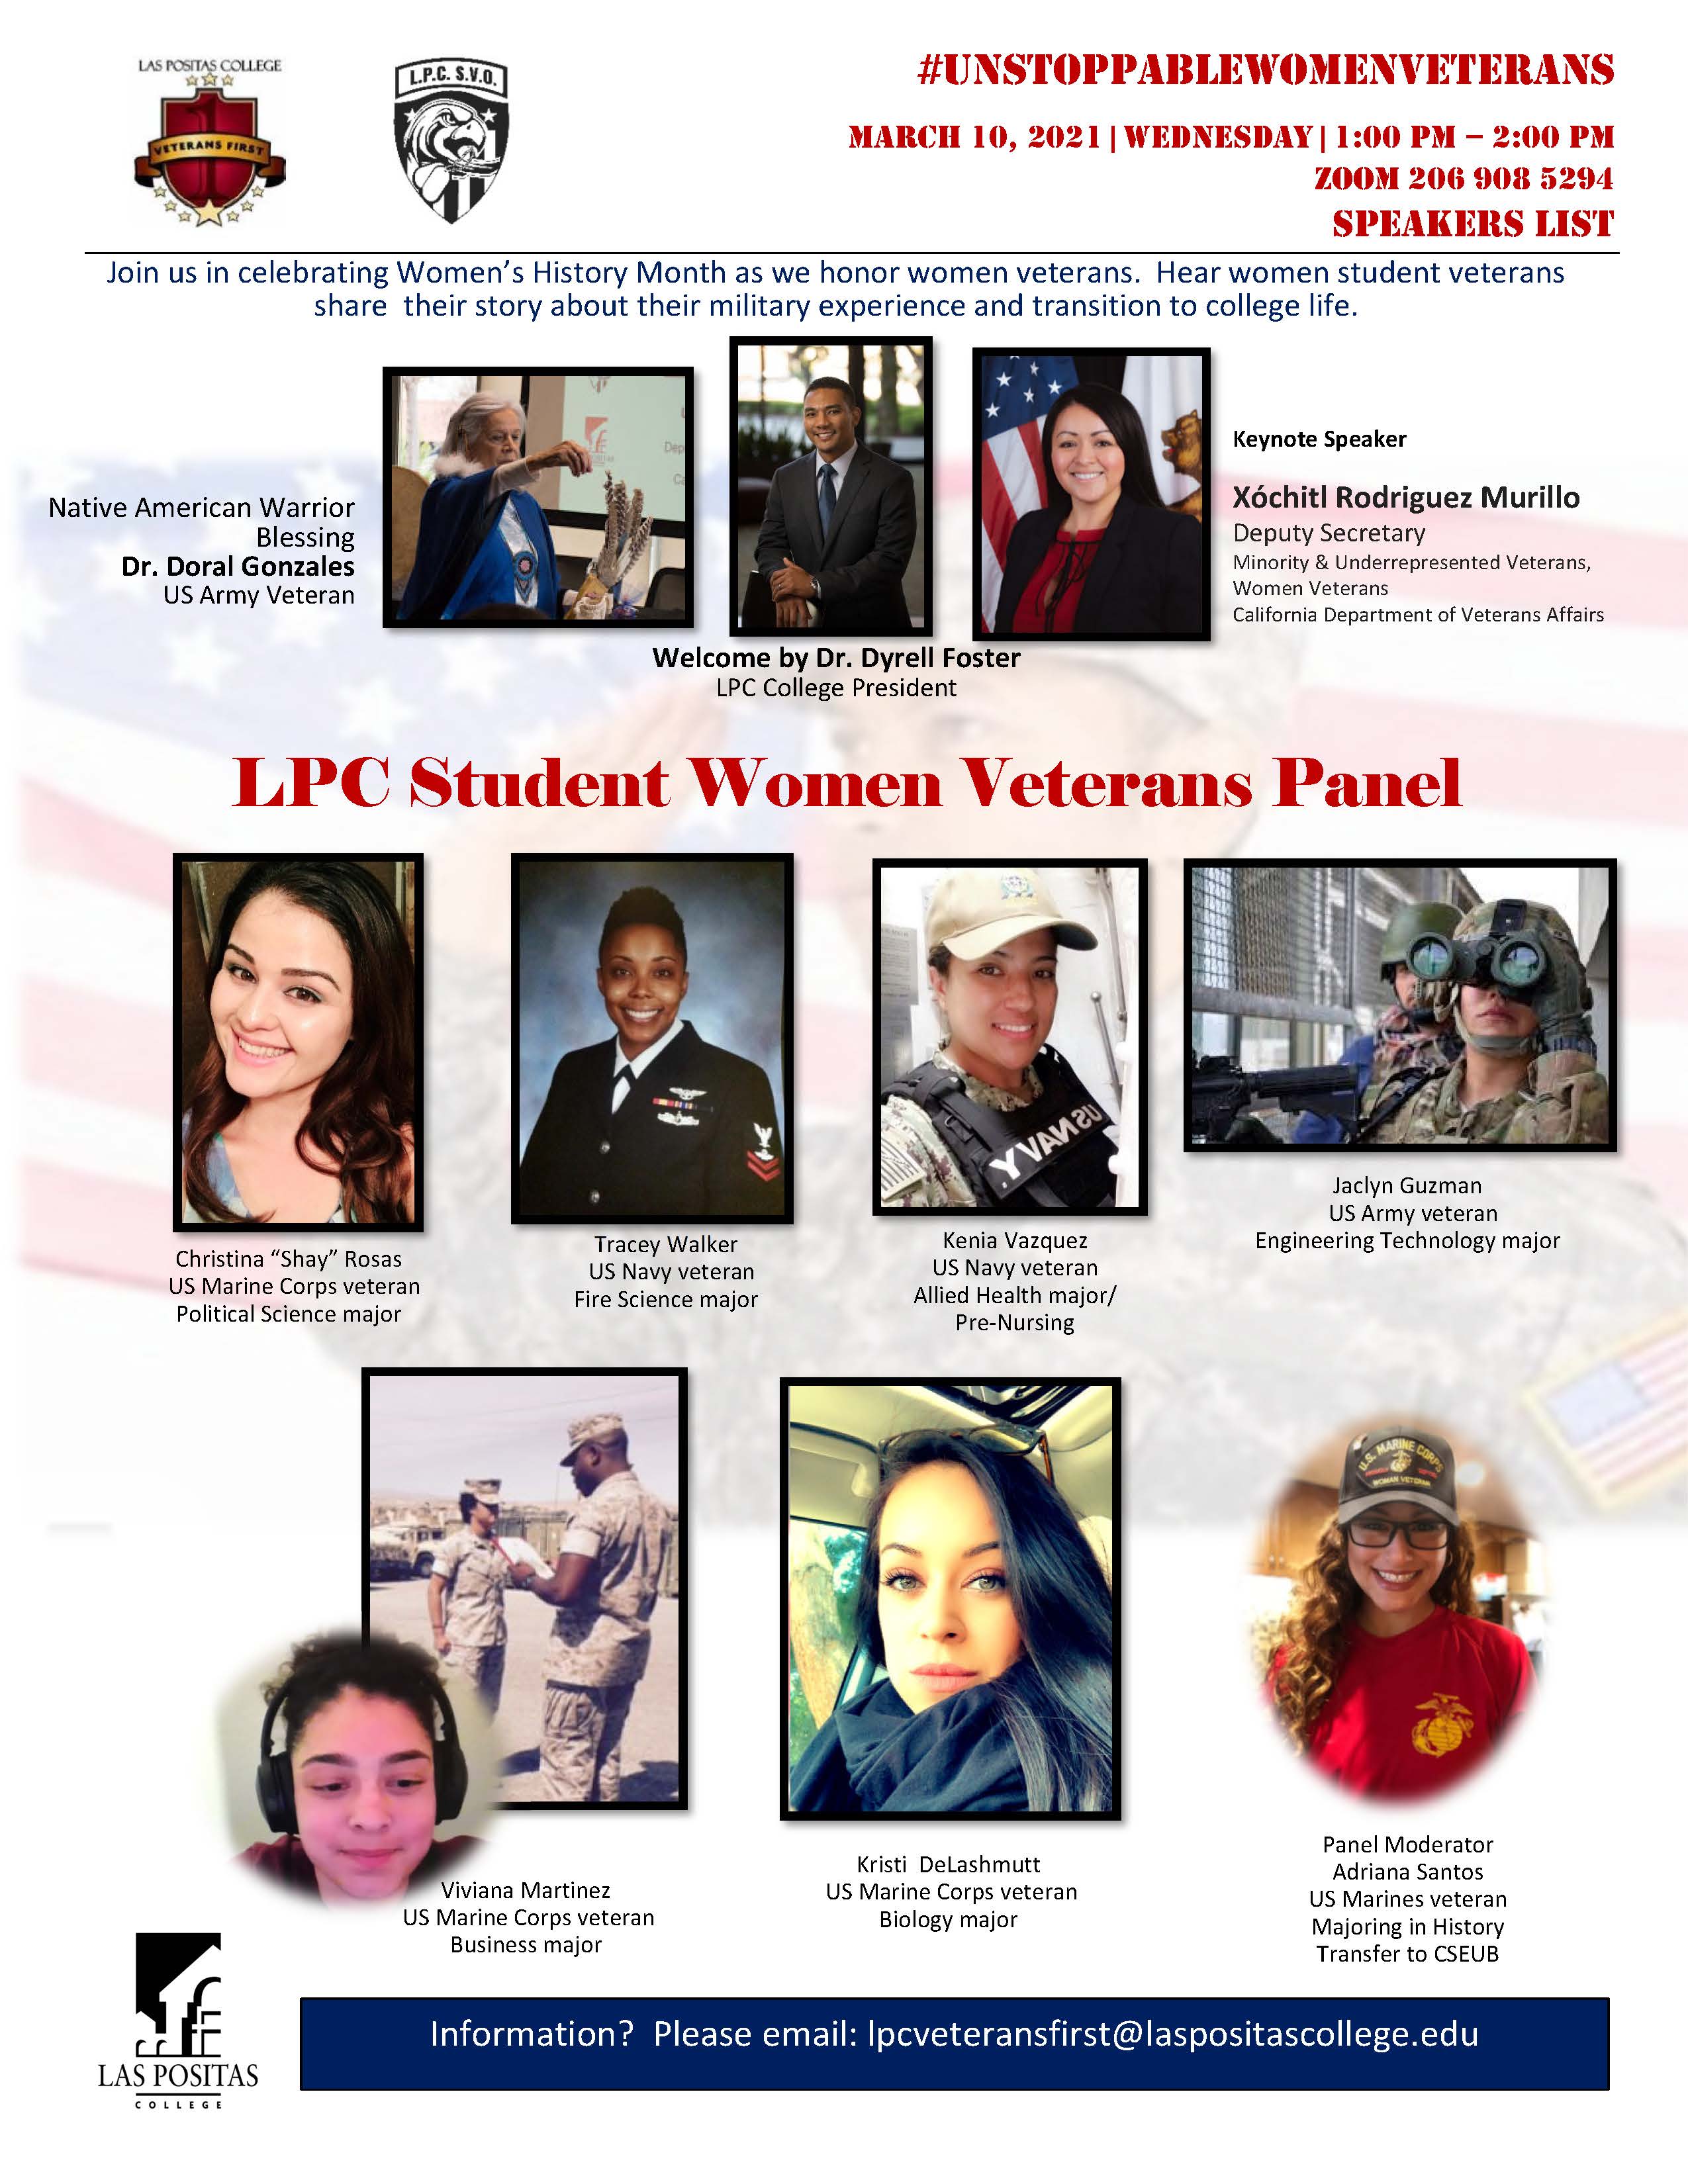 Honoring Women Veterans 2021